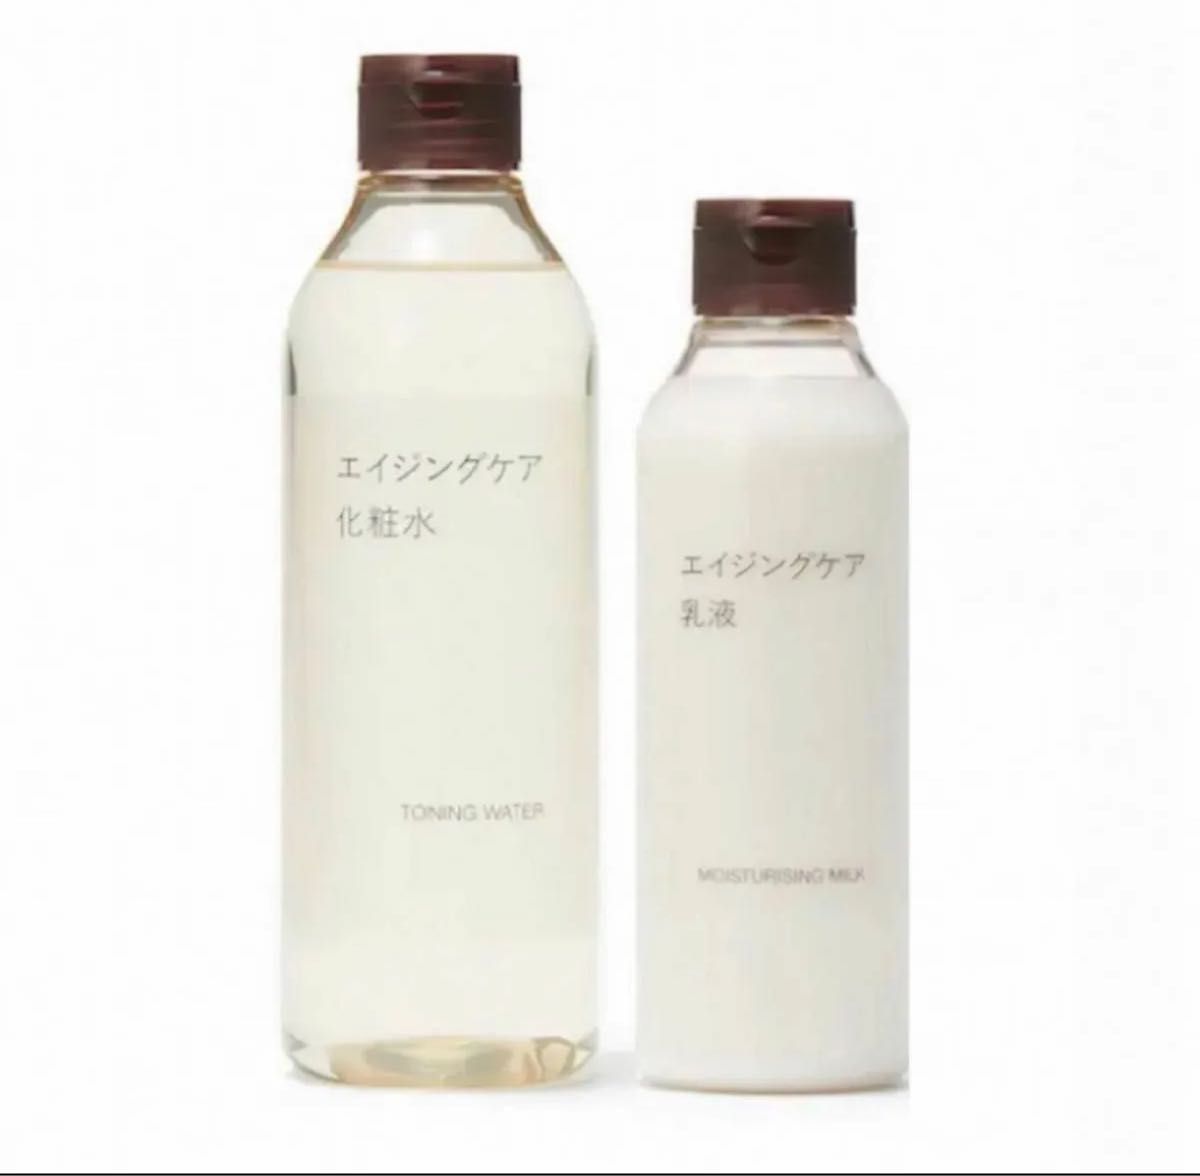 【新品未開封】無印良品エイジングケア化粧水300ml&乳液200gセット